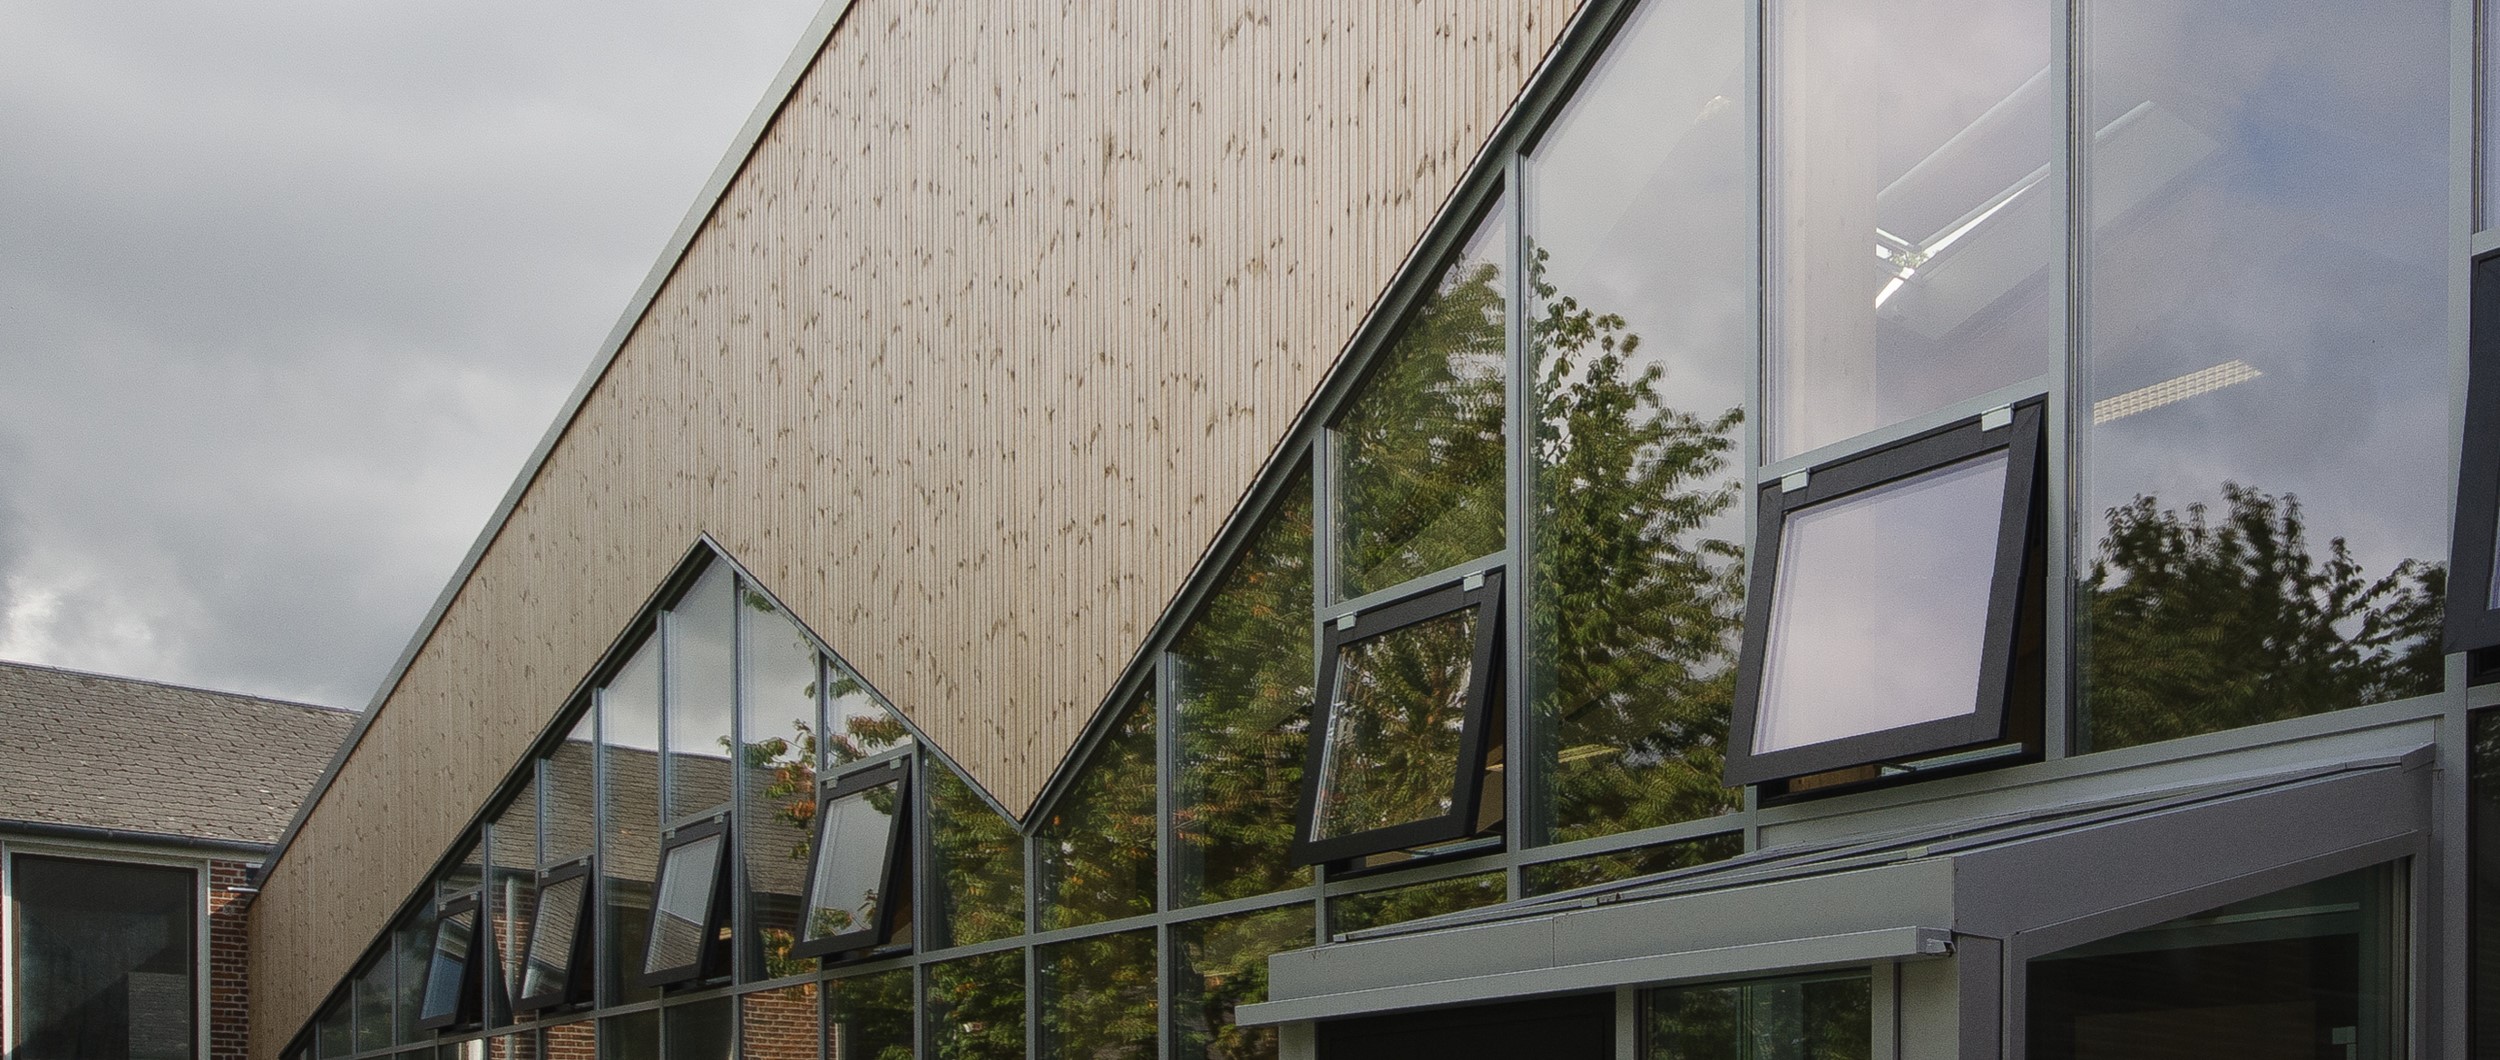 Facaden af den nye bygning er udført af varmebehandlet træ, som over tid patinerer i mange fine grå nuancer, og kræver minimalt vedligehold.